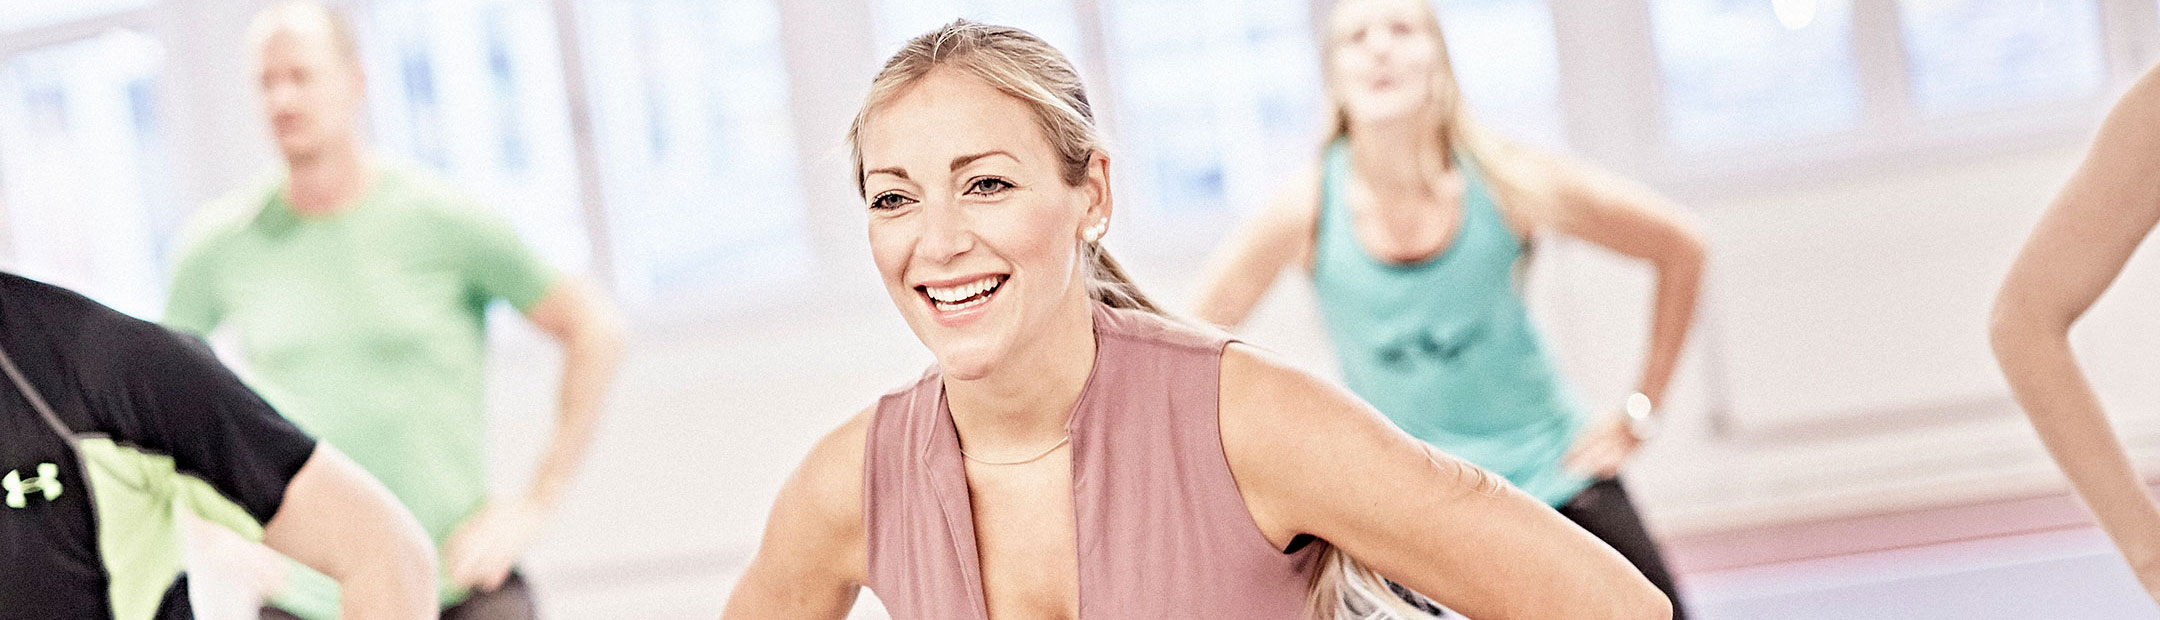 En blond, leende kvinna med rosa träningslinne är i fokus, bakom henne syns flera personer som gympar i en träningssal.